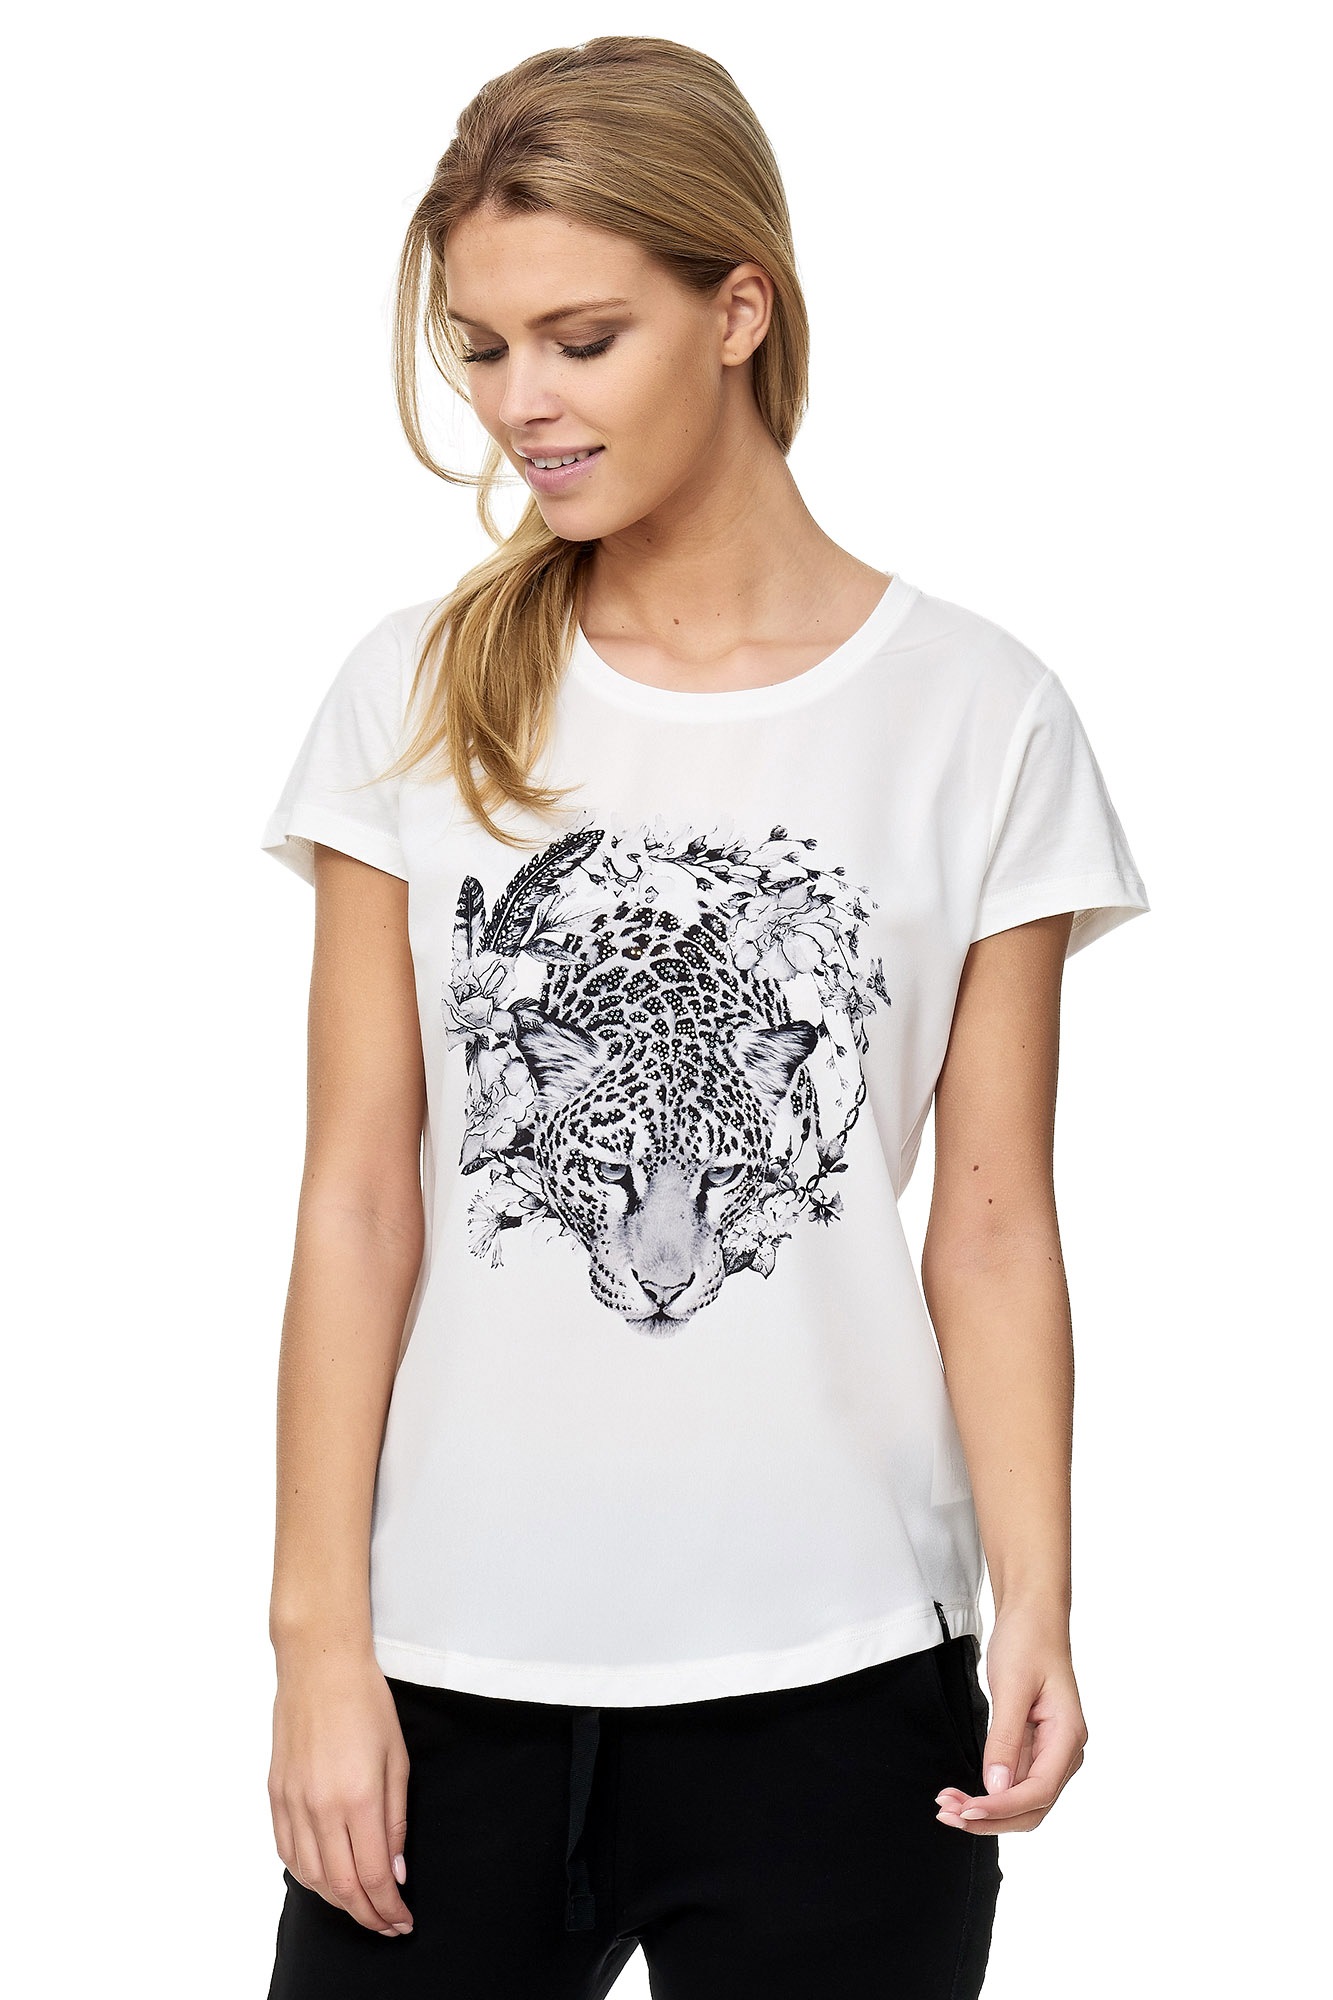 Decay Leoparden-Aufdruck mit T-Shirt, shoppen